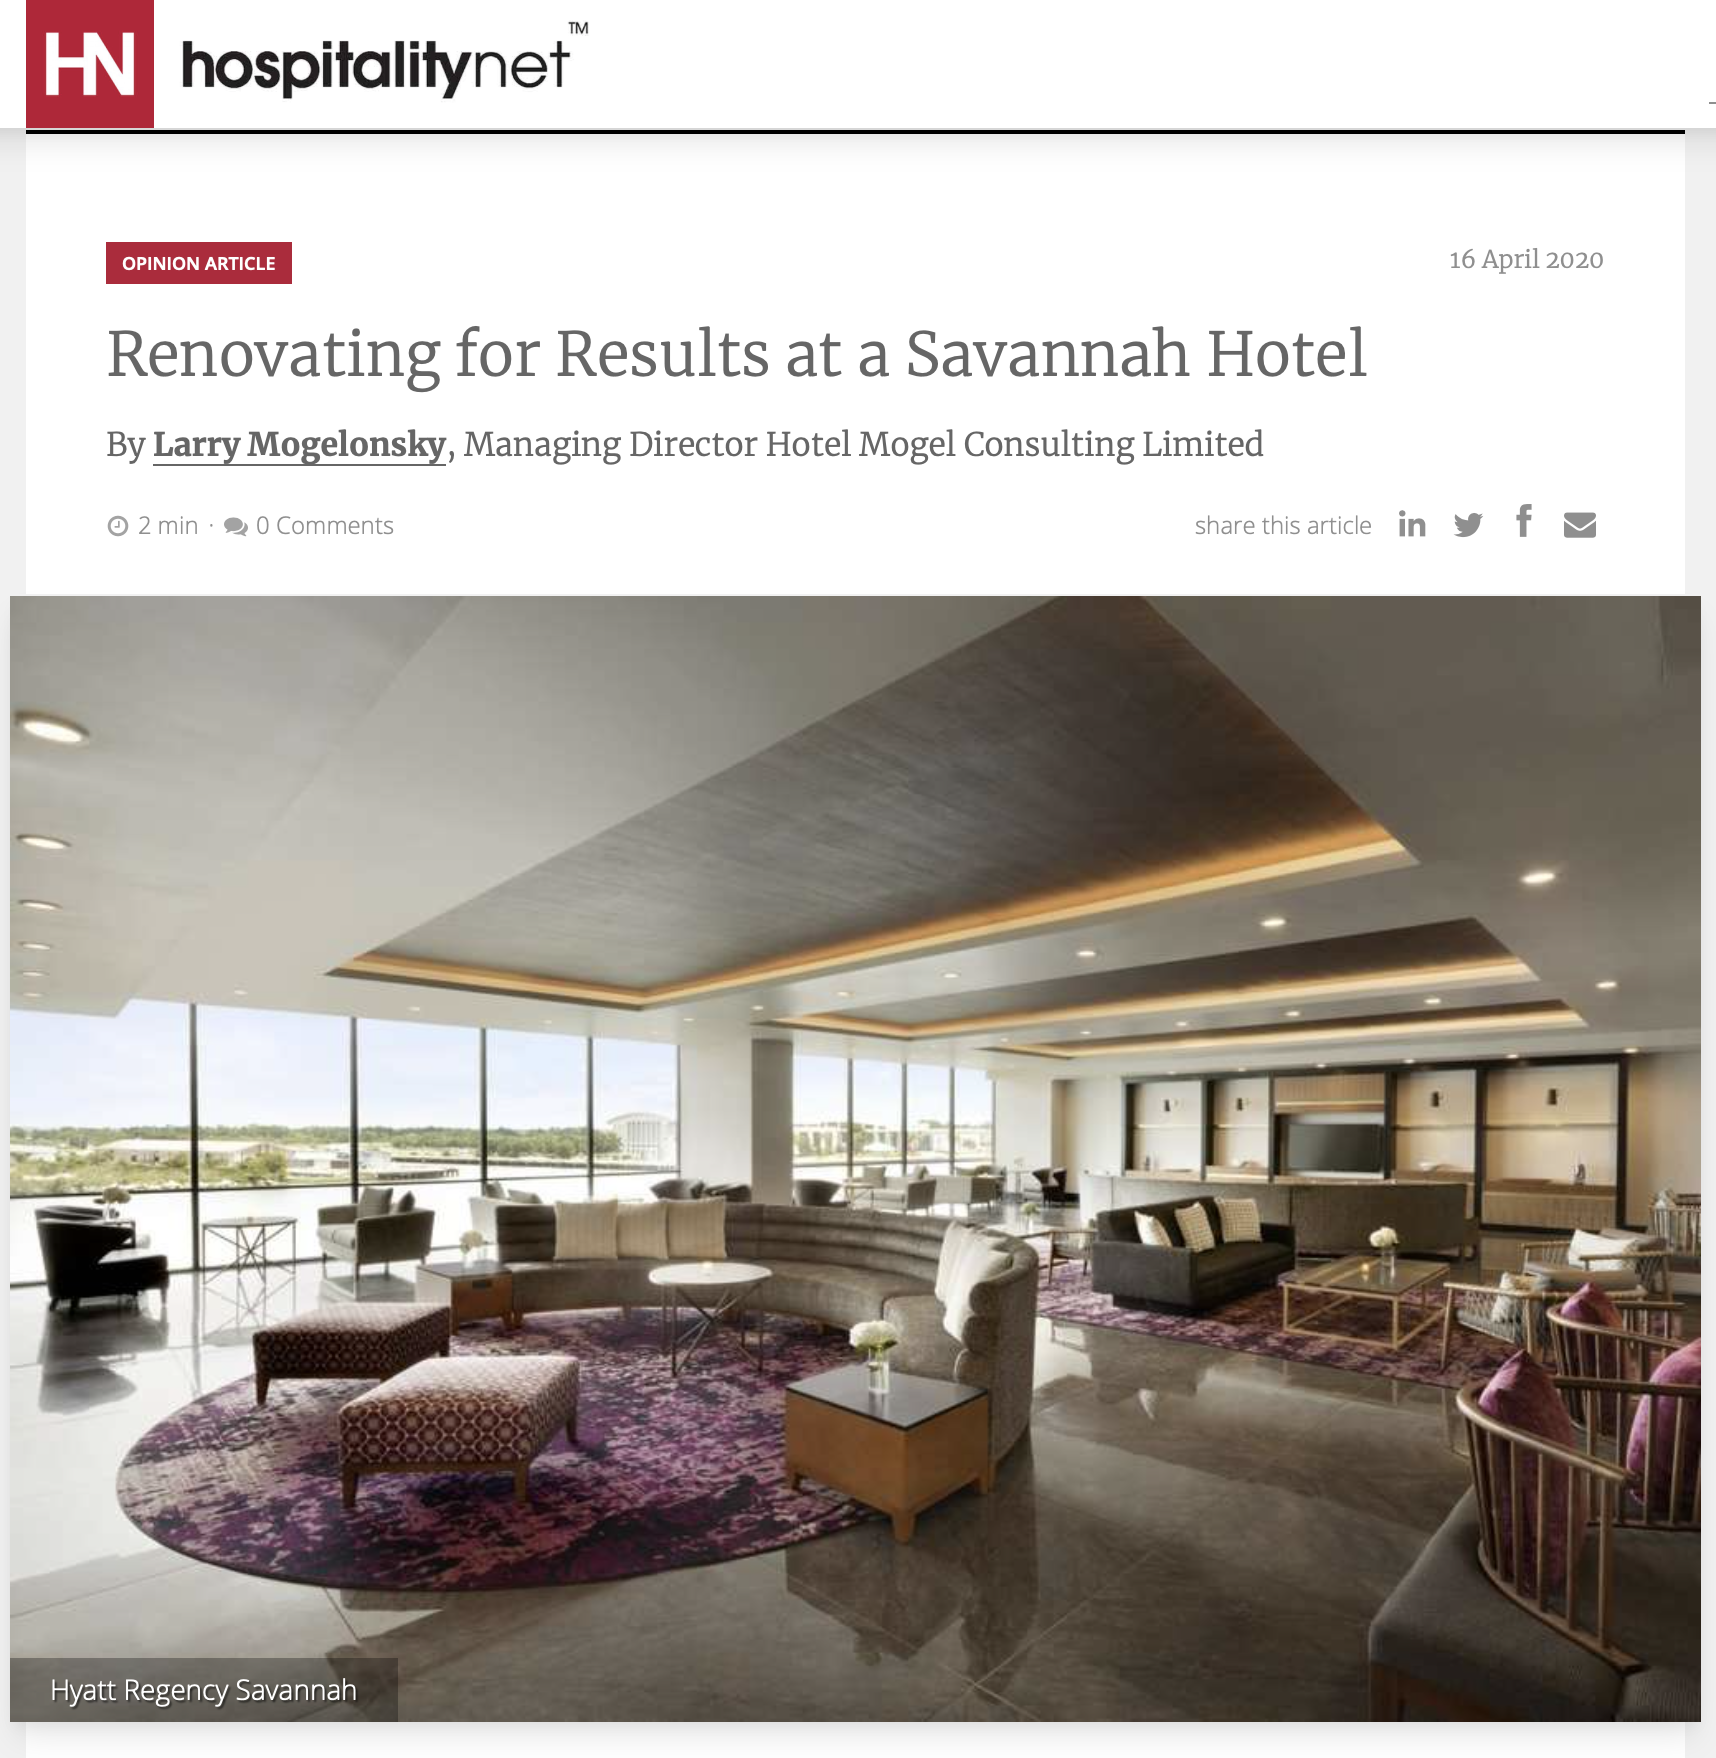 Renovating for Results at a Savannah Hotel